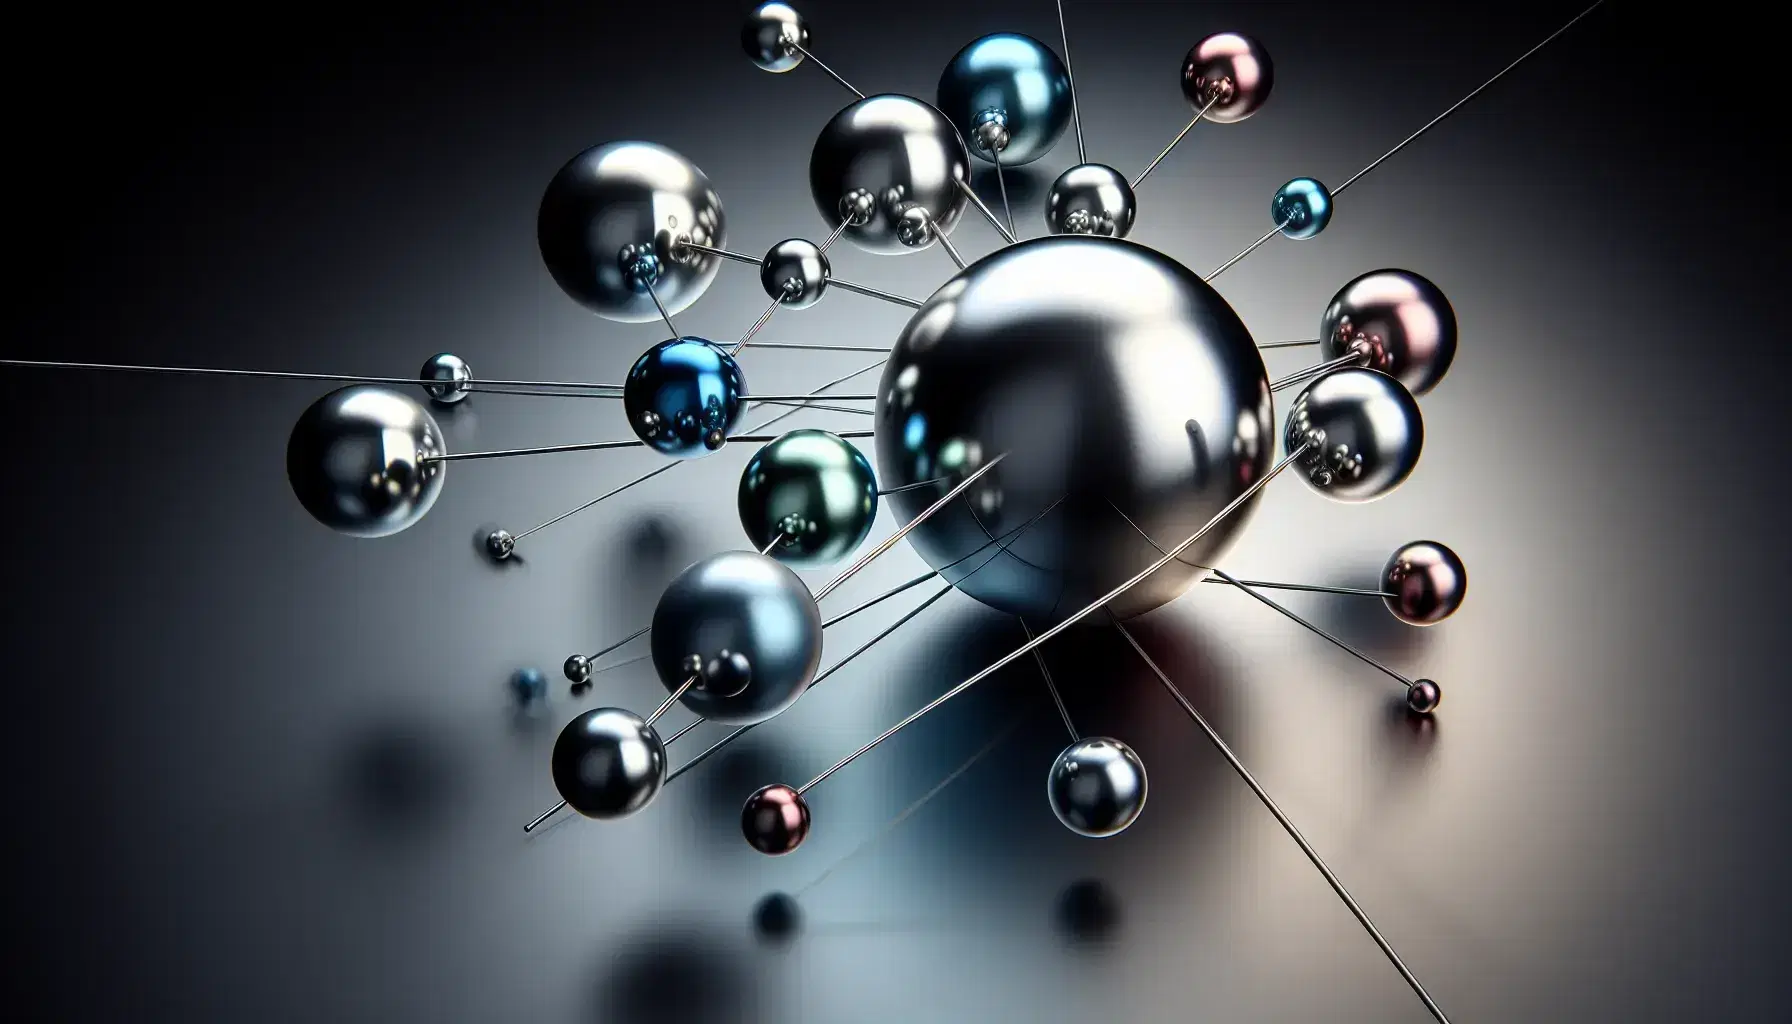 Esferas metálicas reflectantes de colores suspendidas alrededor de una esfera central plateada, conectadas por varillas grises en un fondo negro.